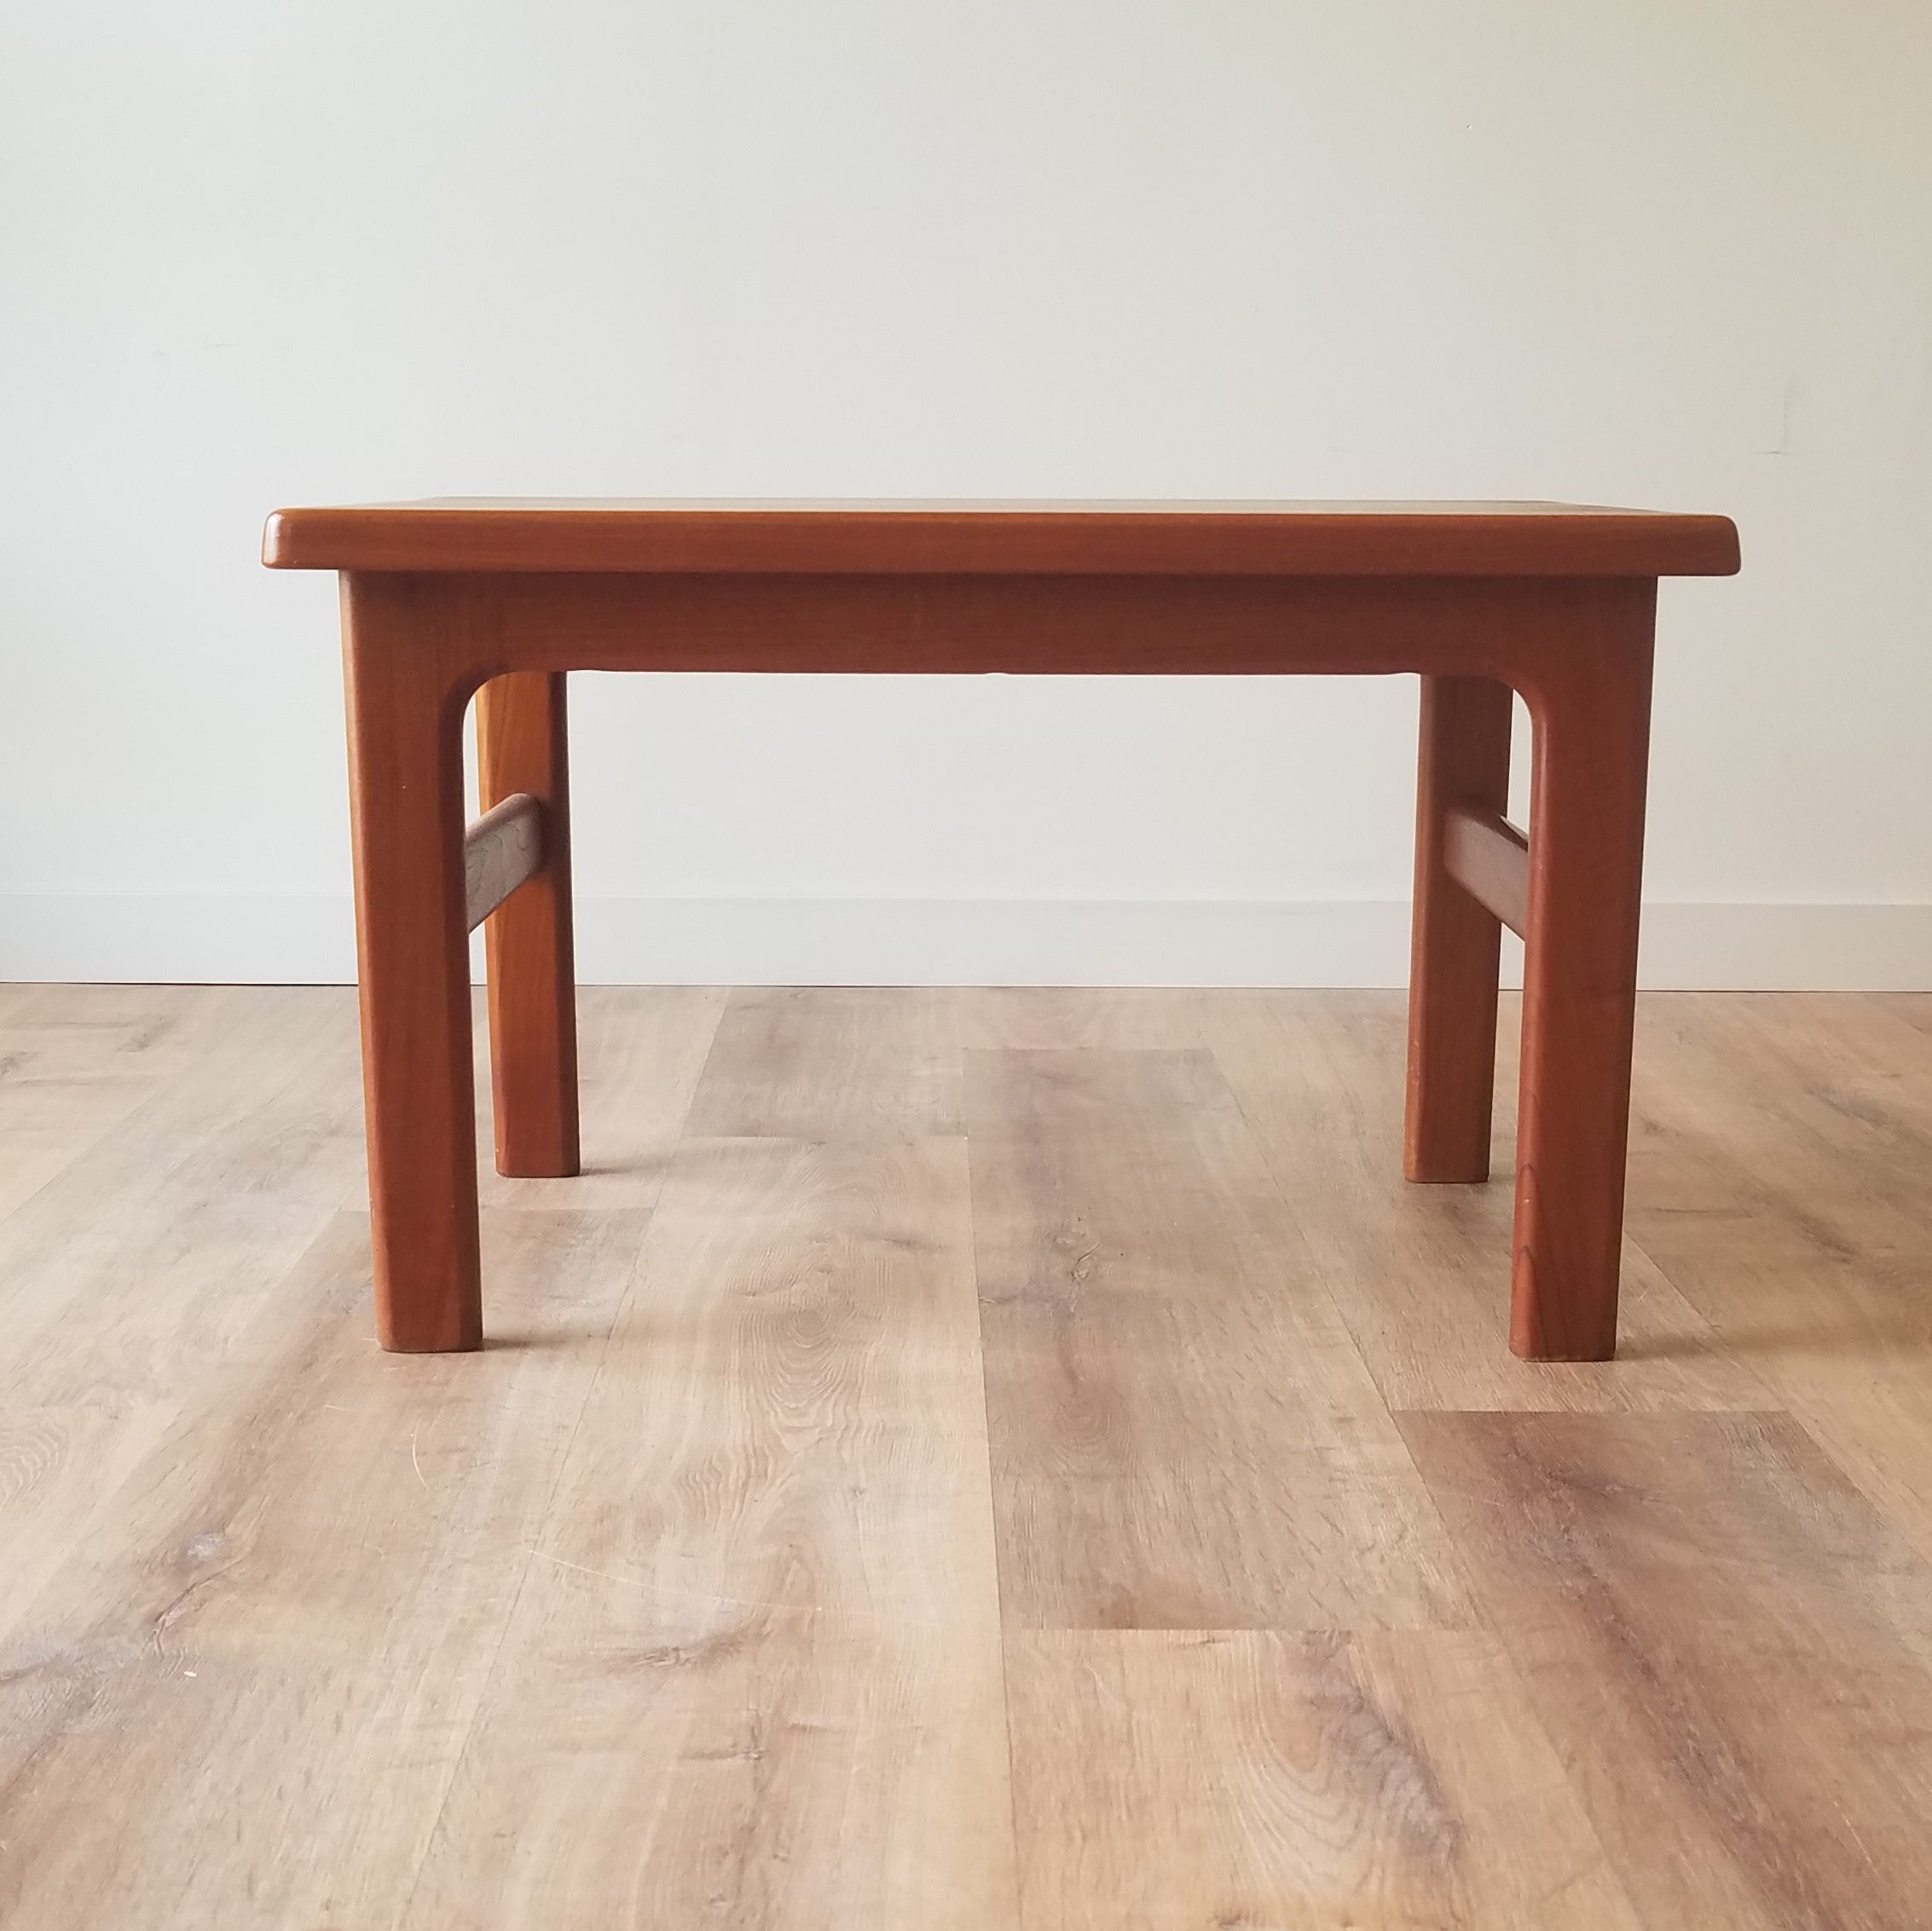 Neils Bach Coffee + Side Table - a set